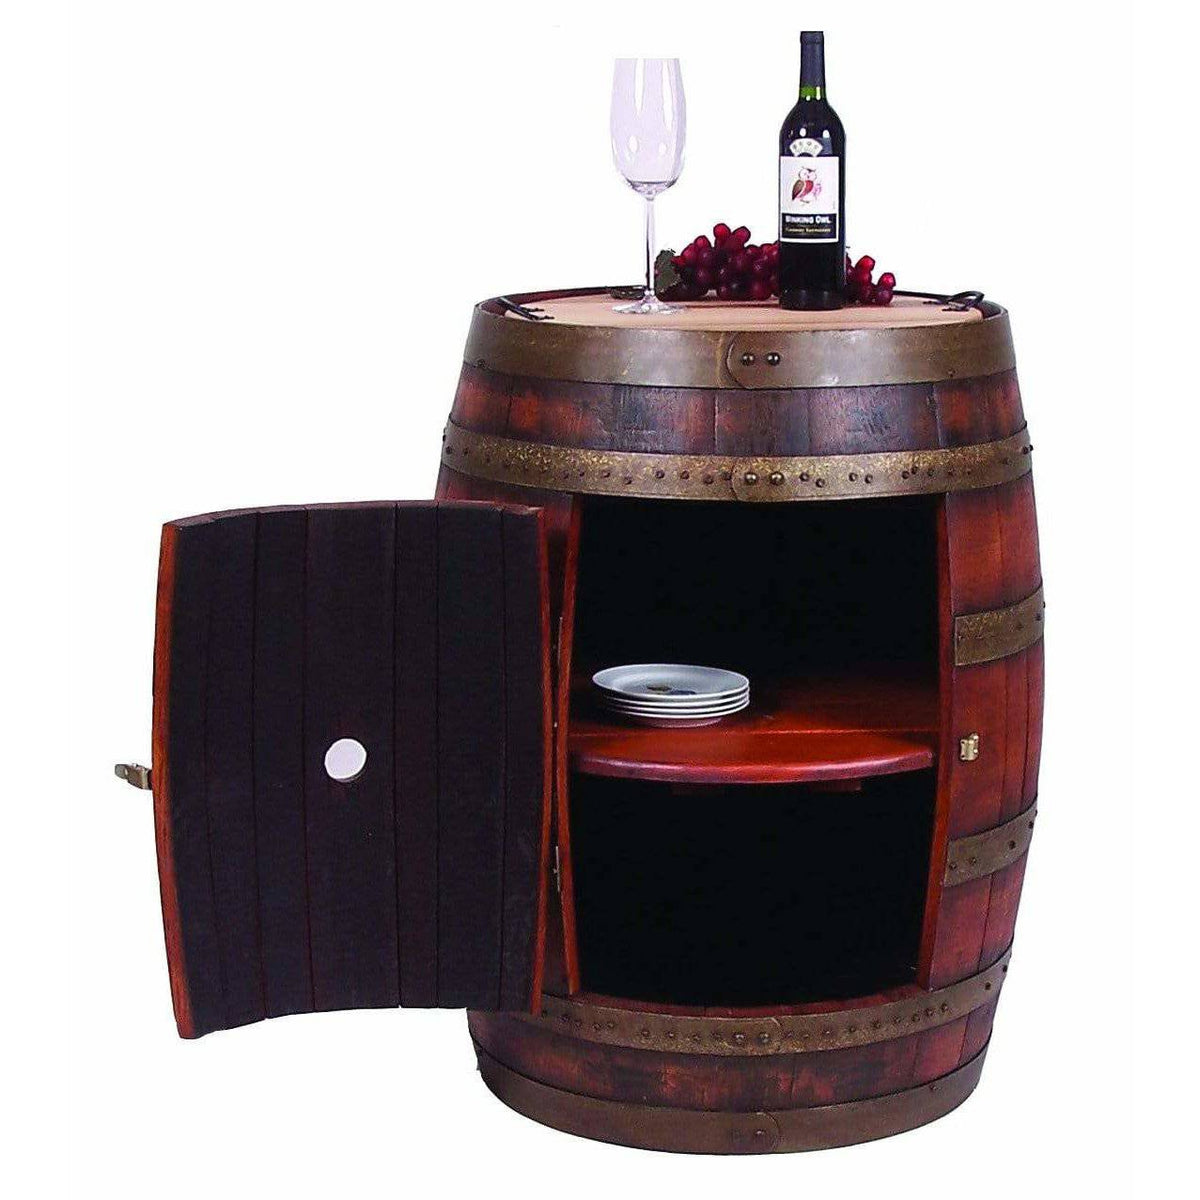 Бочка для вина купить. Винный бар Barrel. Столик в виде бочки. Бар из деревянной бочки. Деревянный мини бар.